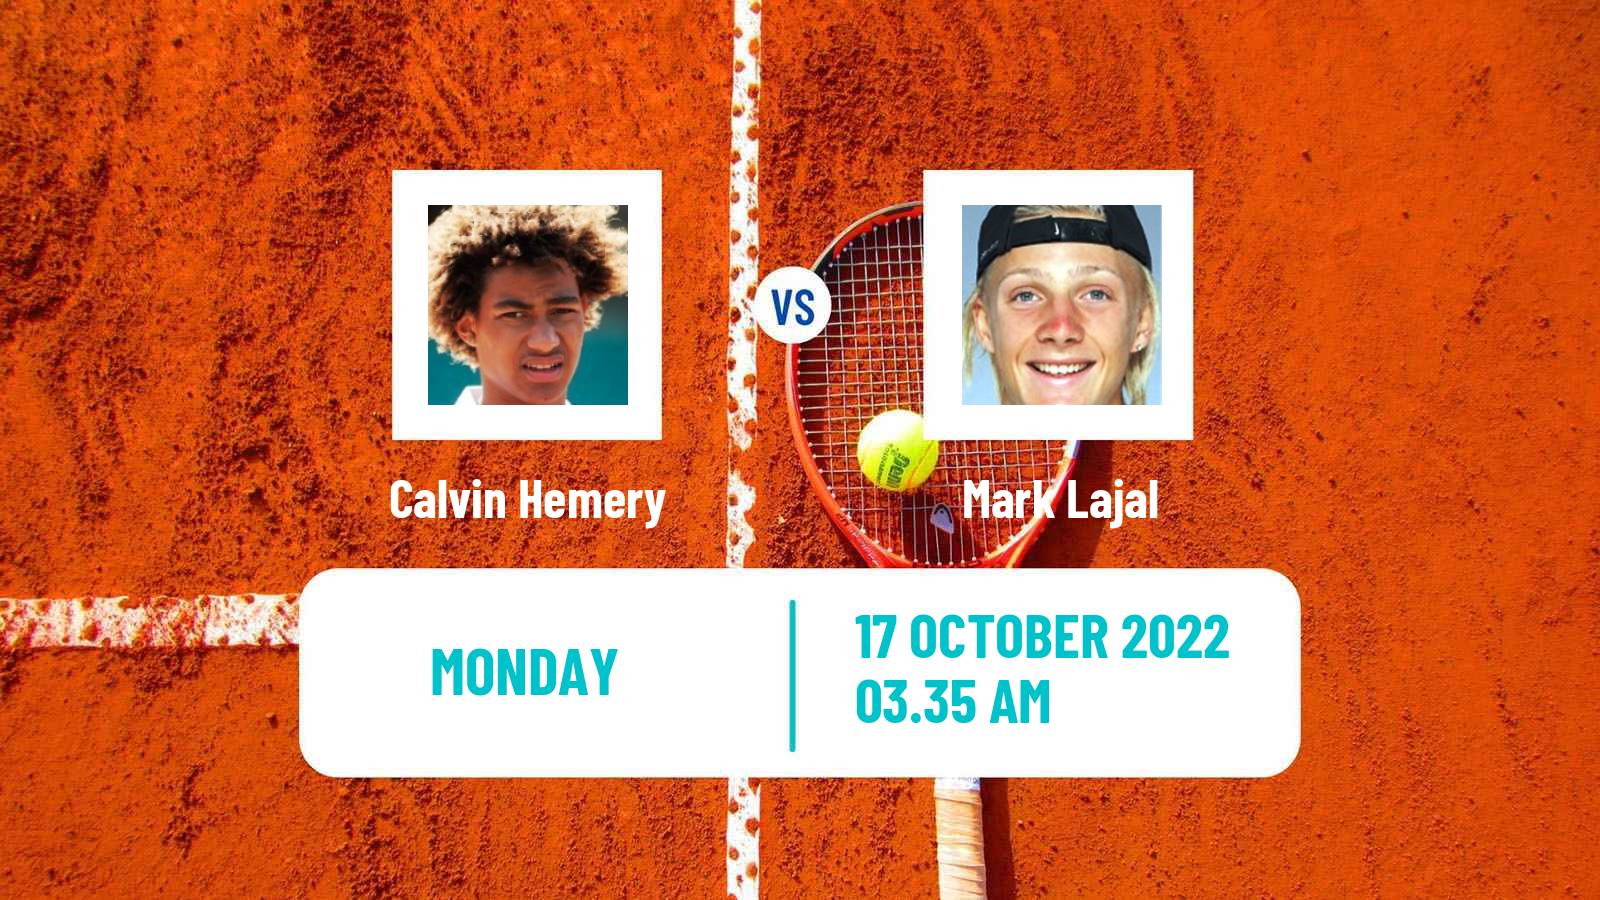 Tennis ATP Challenger Calvin Hemery - Mark Lajal